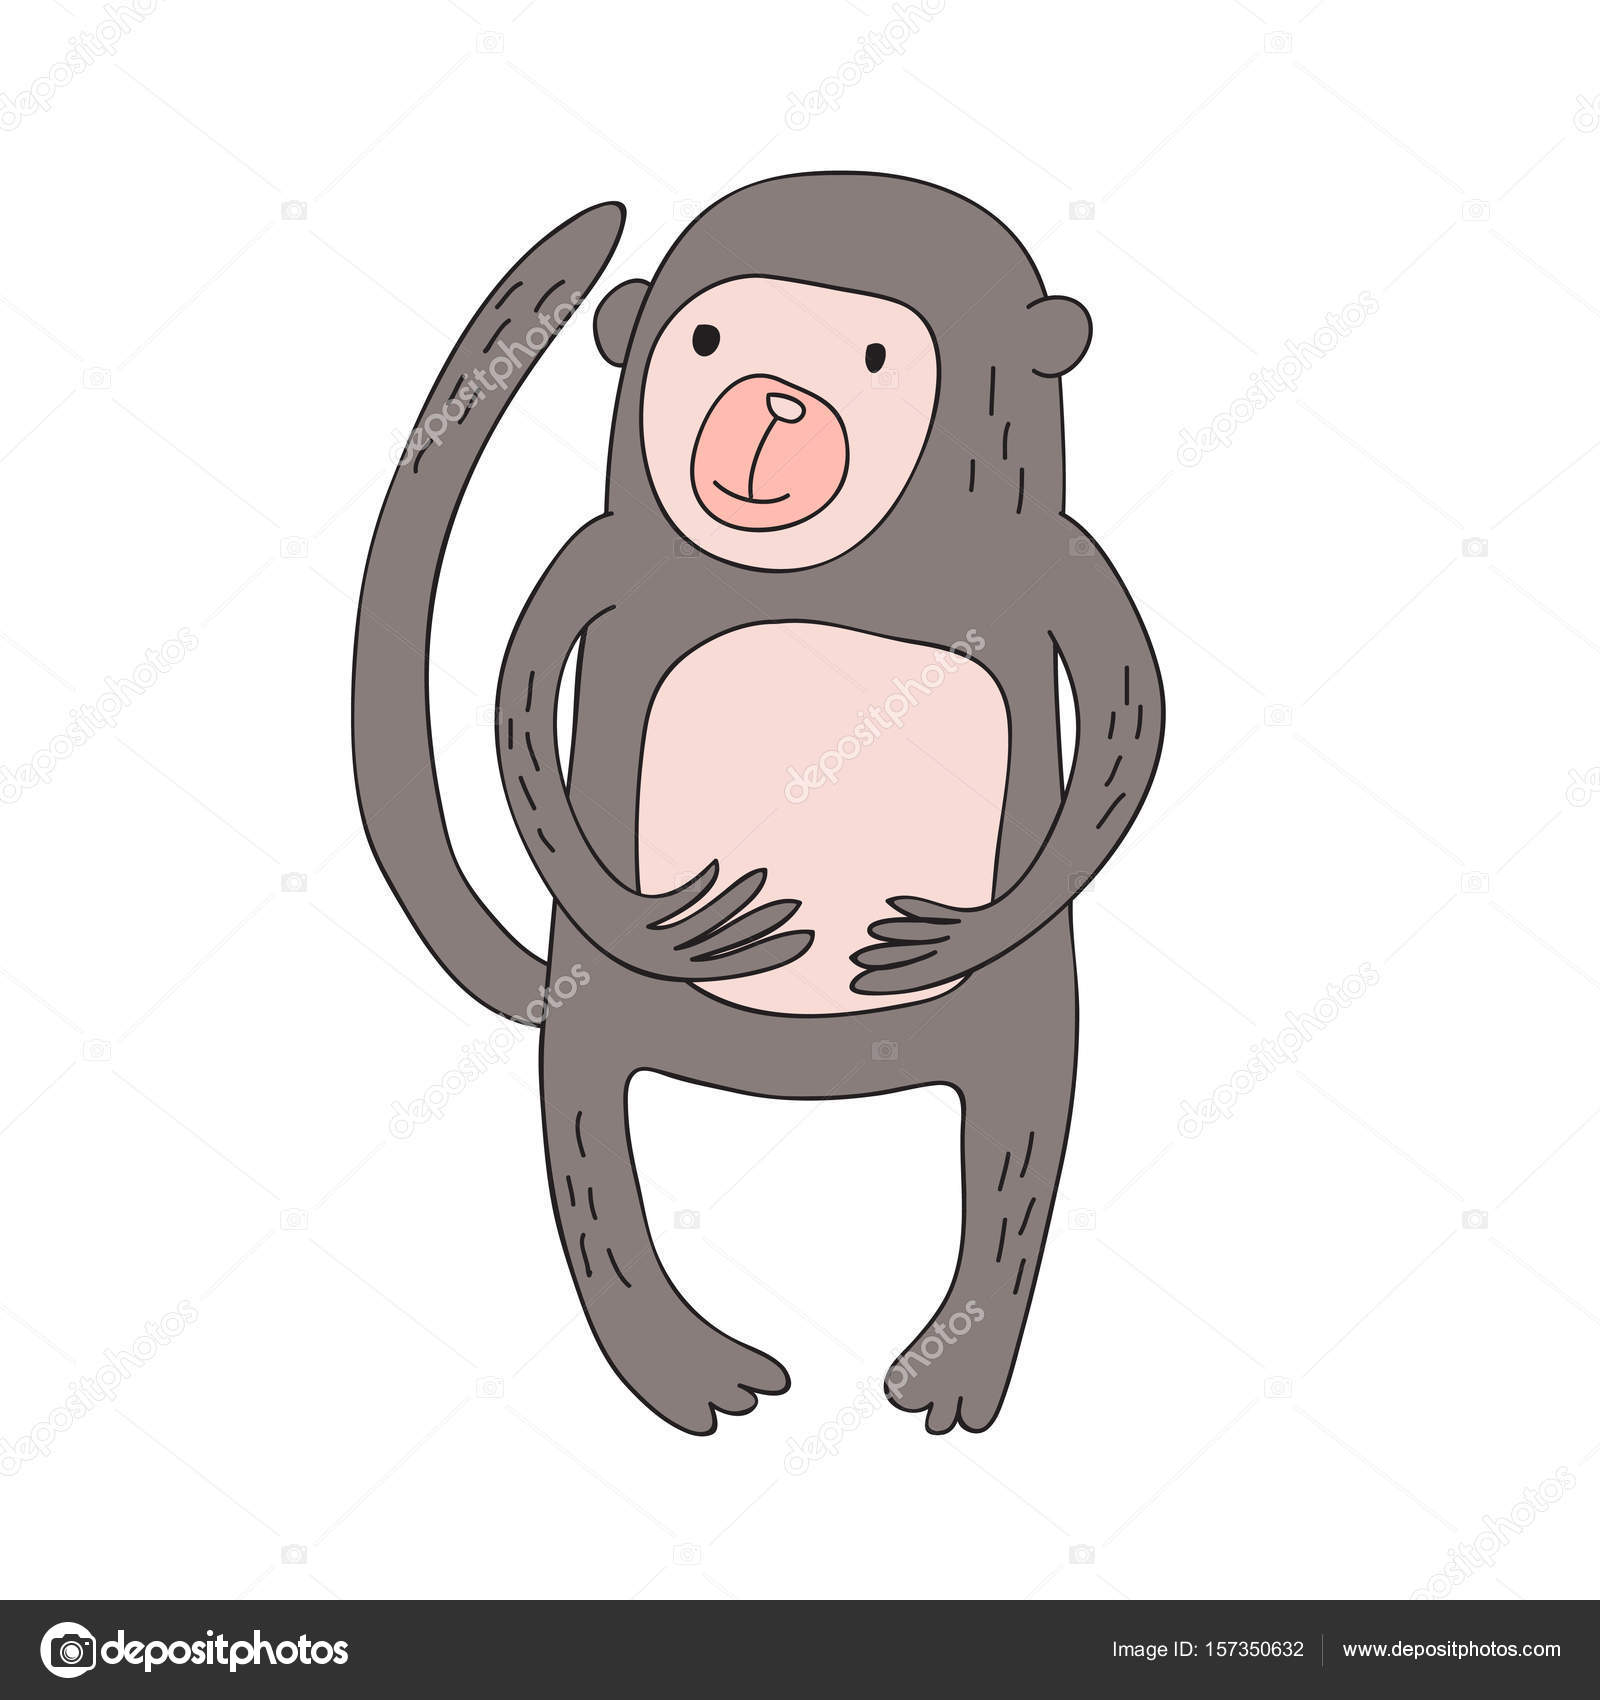 ilustração vetorial de um macaco em um estilo de desenho animado